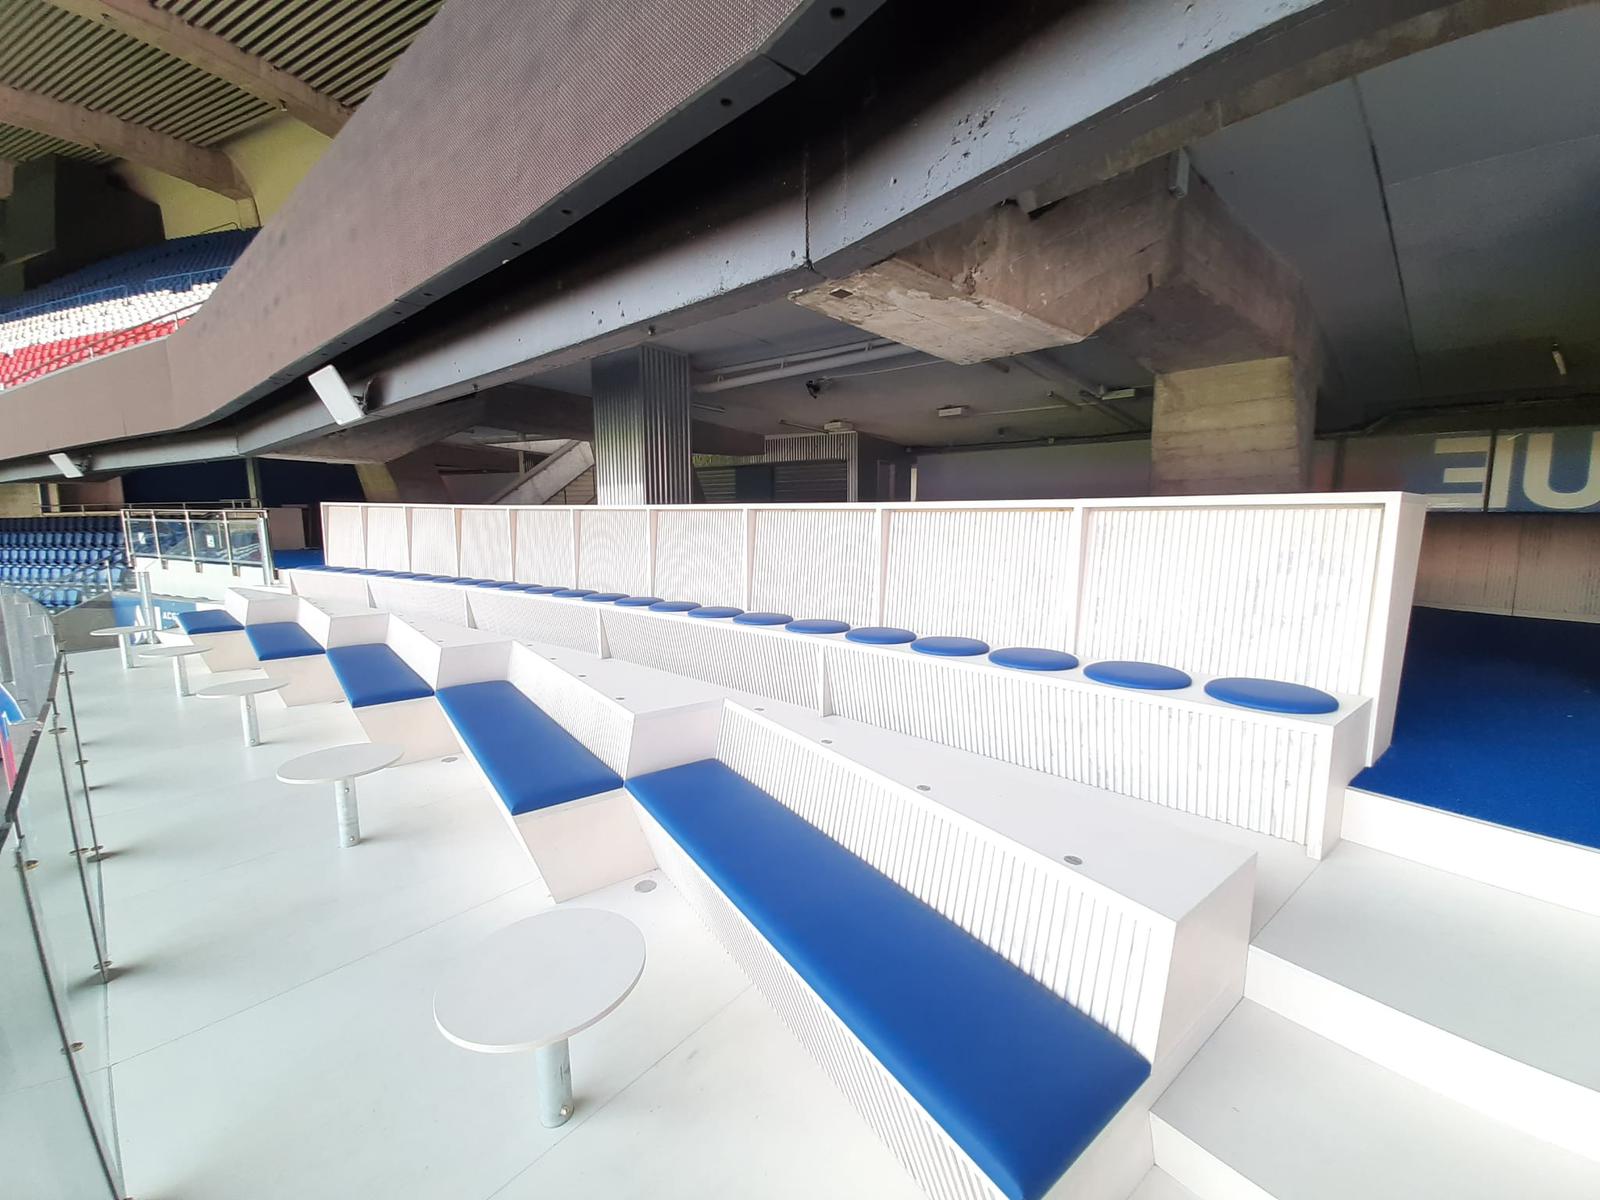 Le PSG lance une nouvelle offre ticketing en mode "sports bar" au Parc